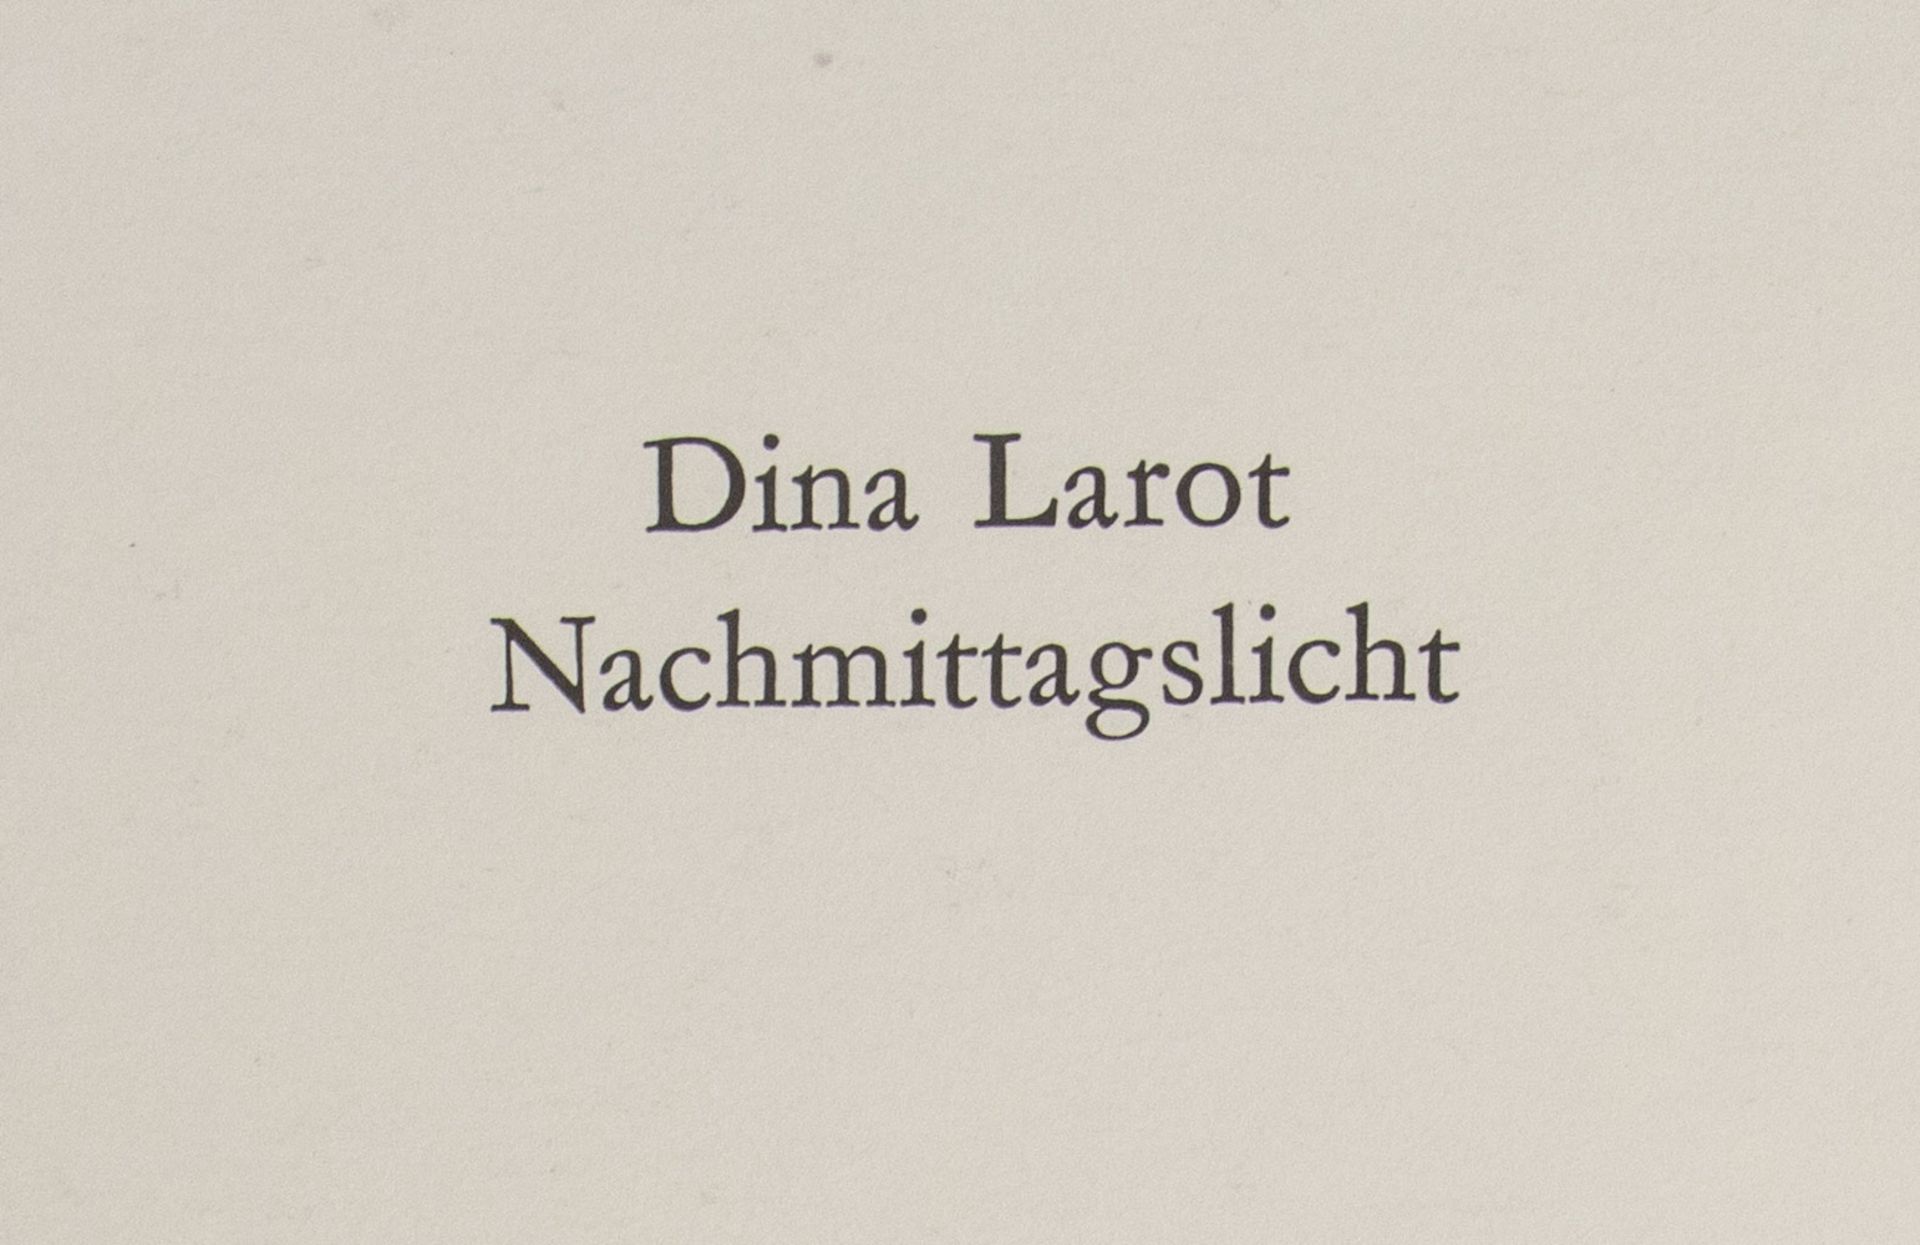 Dina Larot: 'Nachmittagslicht' / 'Afternoon-Light', Wien, 1977 - Image 4 of 7